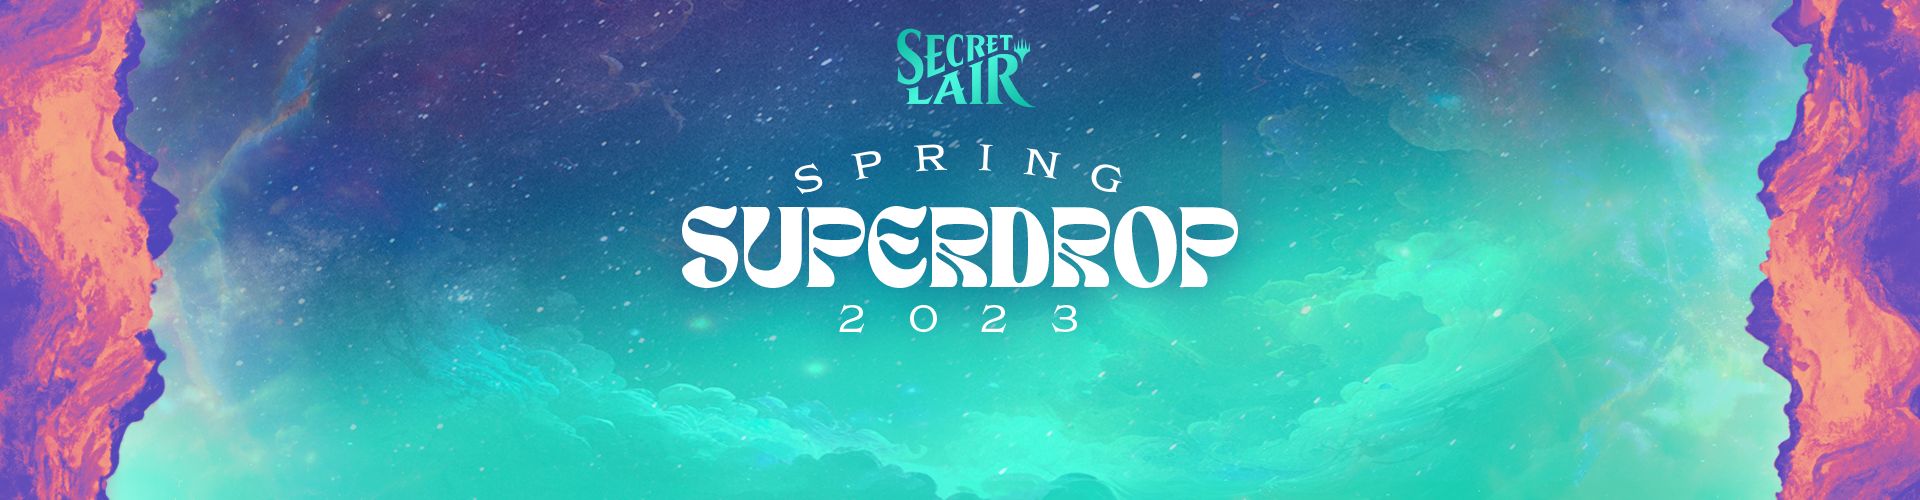 Spring Superdrop 2023 | Secret Lair